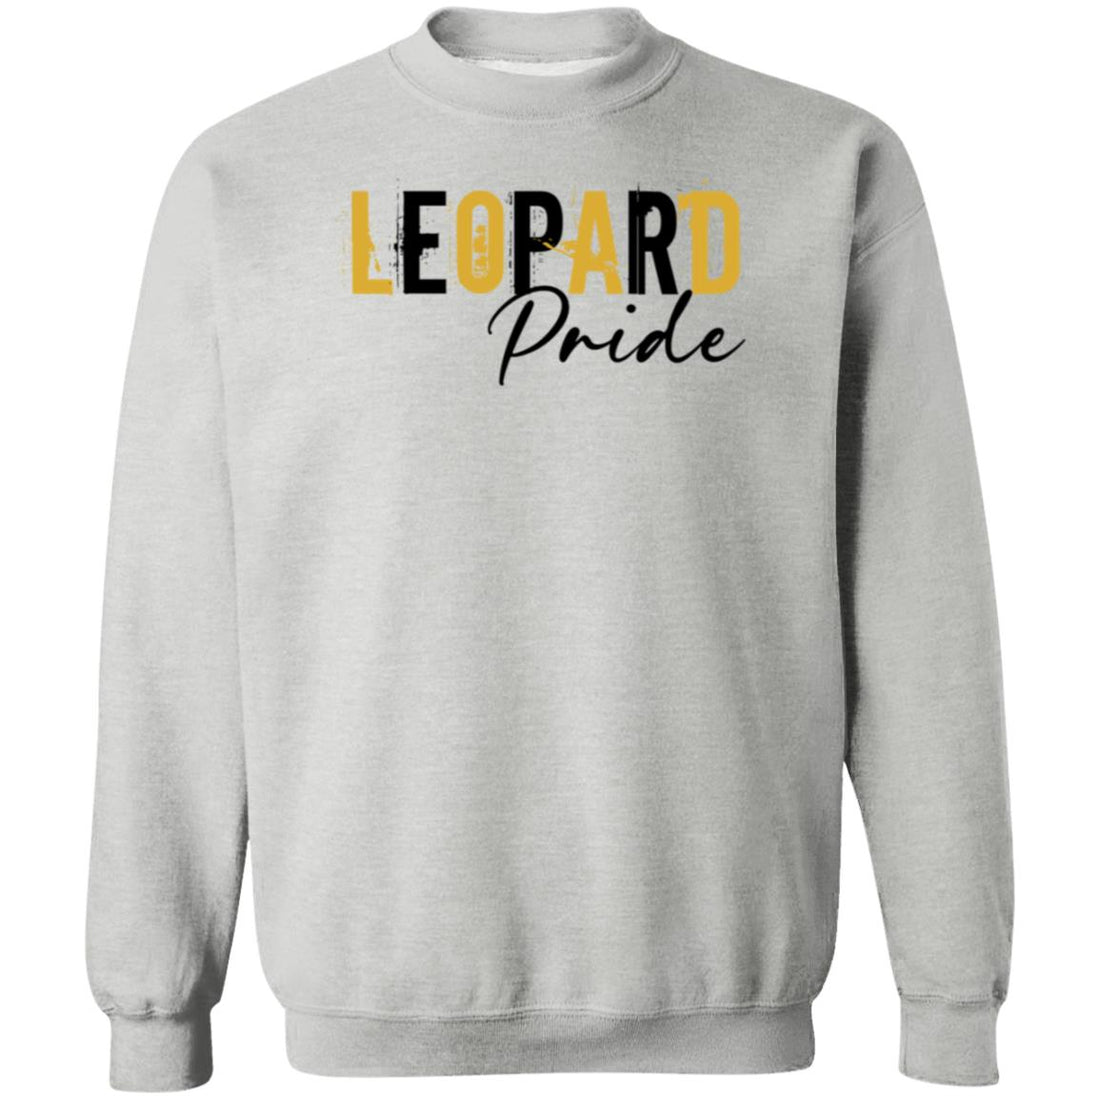 Leopard Pride Crewneck Pullover Sweatshirt - Sweatshirts - Positively Sassy - Leopard Pride Crewneck Pullover Sweatshirt